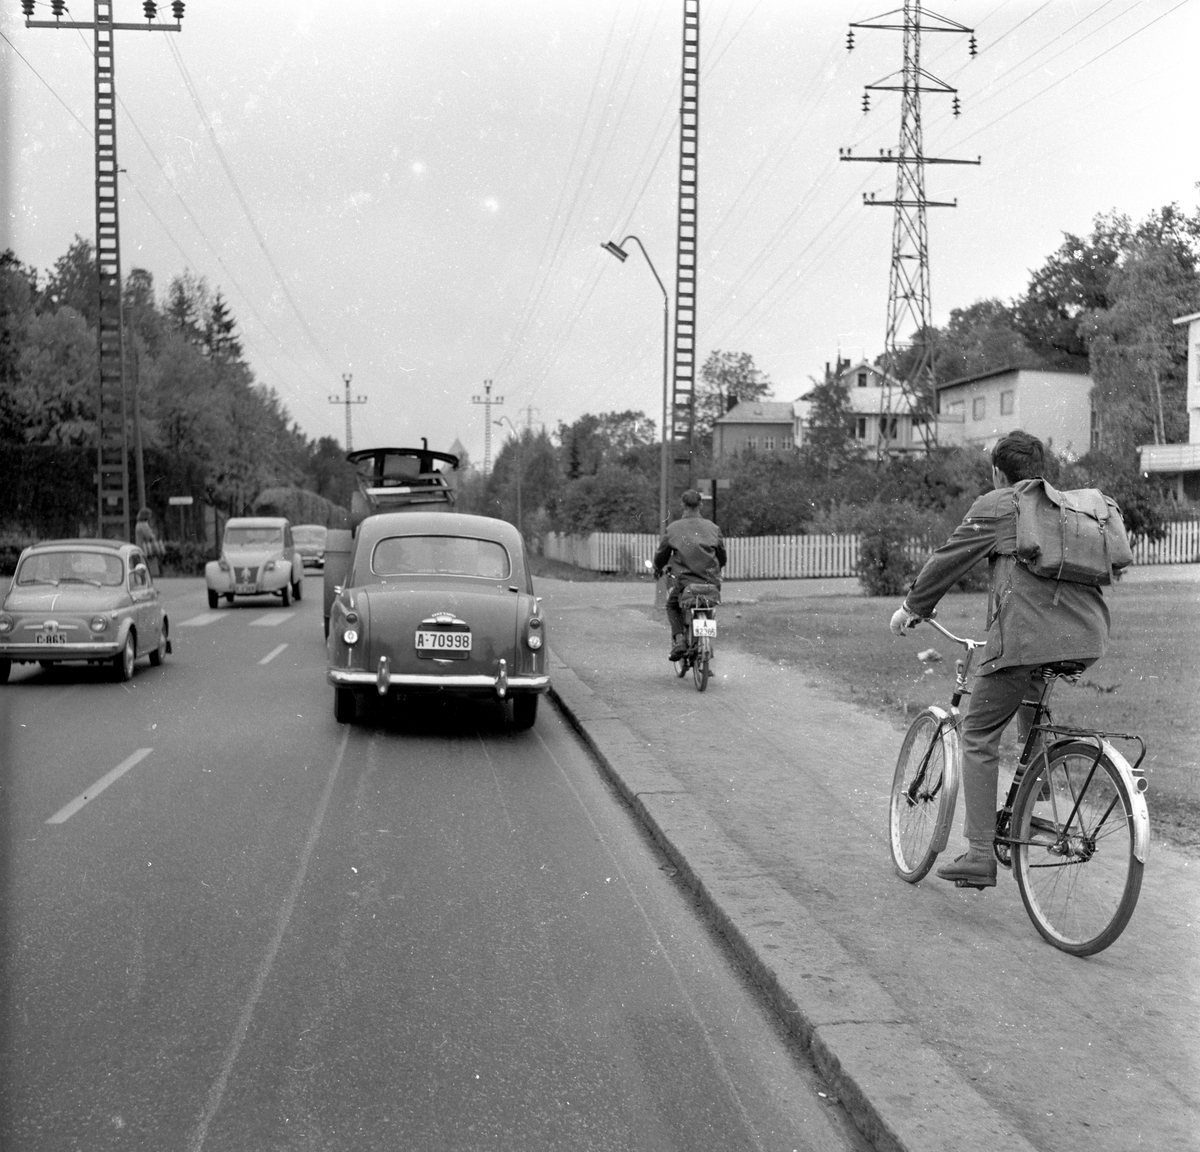 Biler, sykkel og moped kjører på veien i Ullernåsen, Oslo. Fotografert 8. oktober 1959.